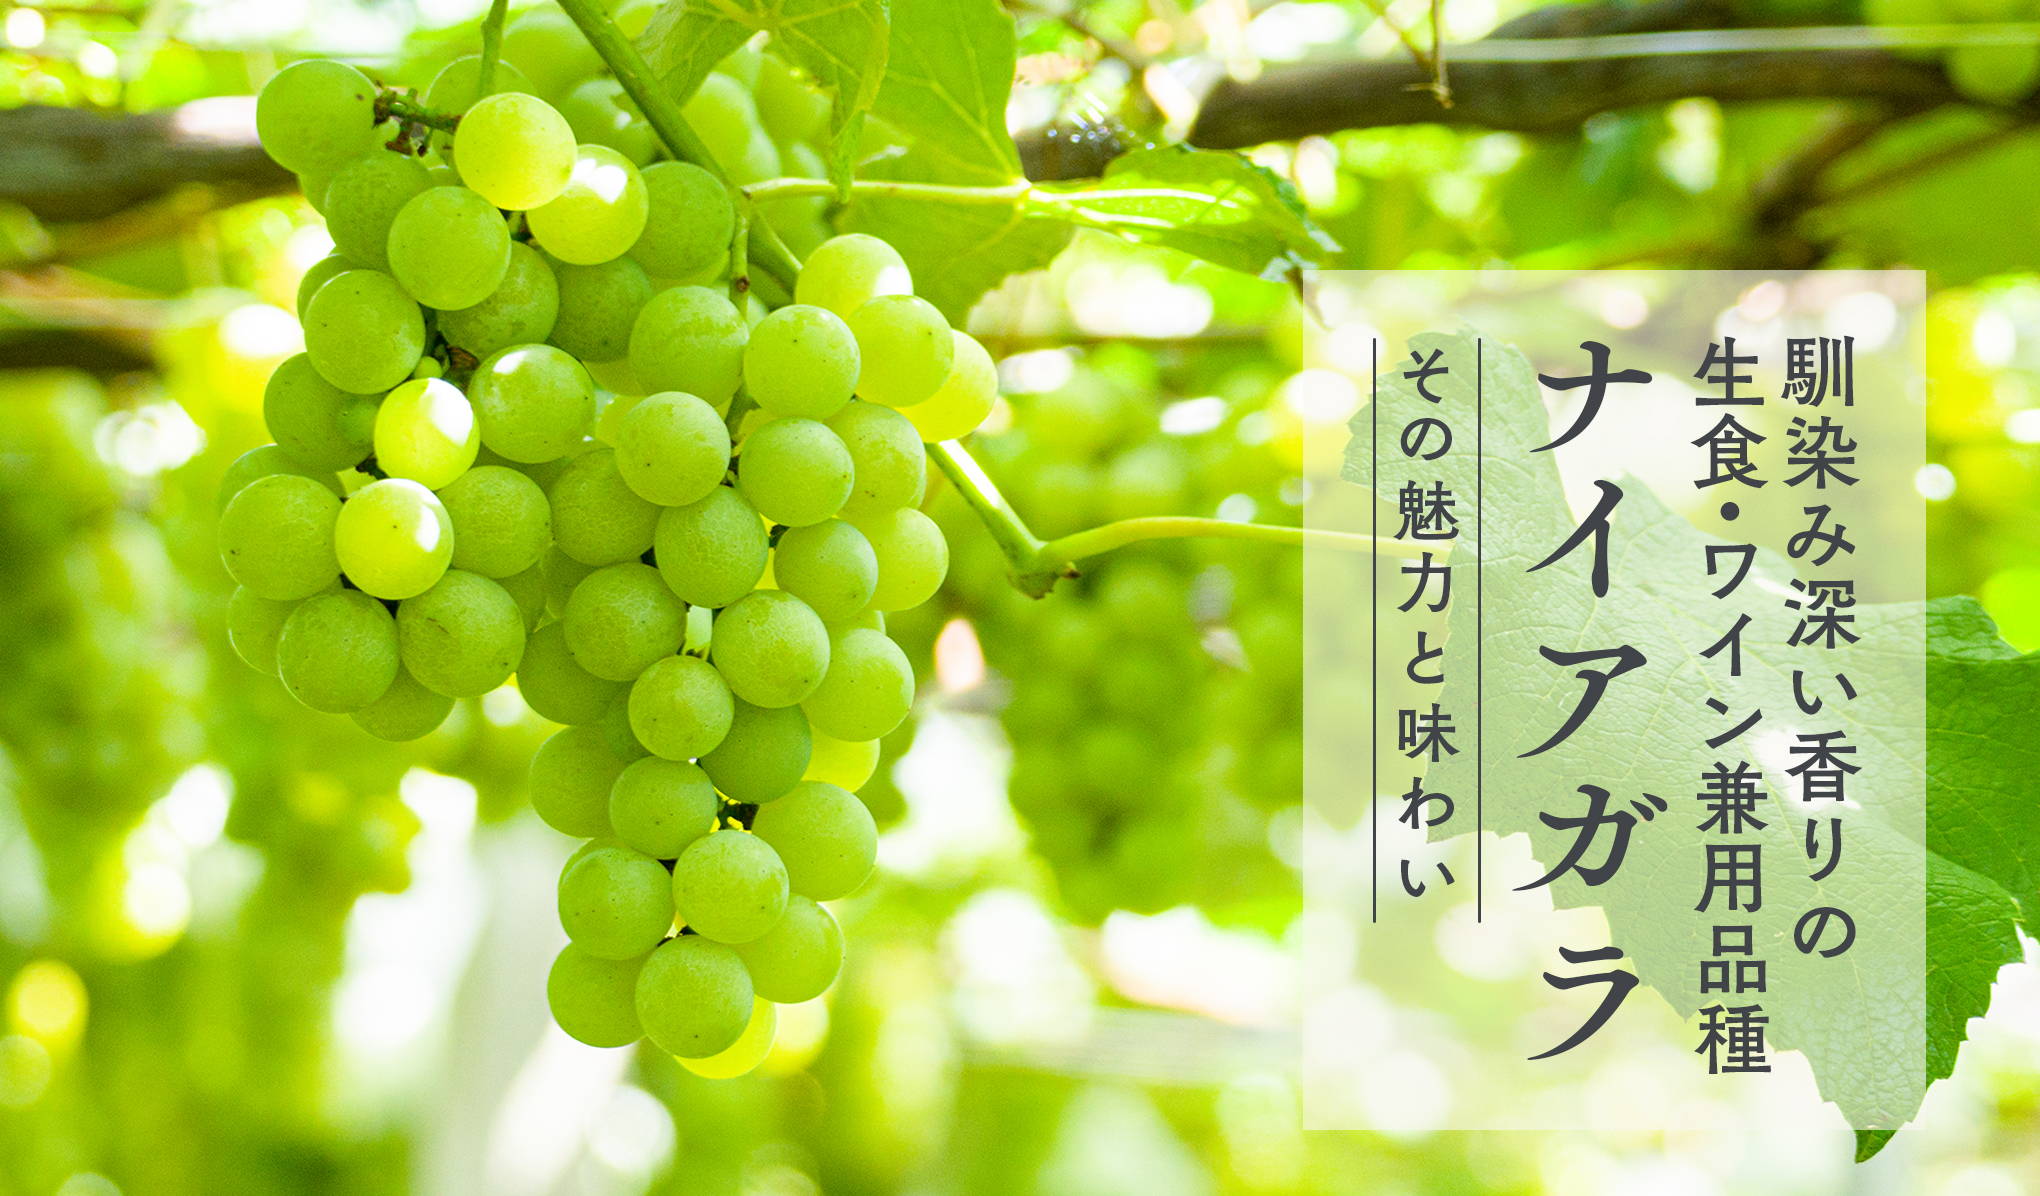 馴染み深い香りの生食 ワイン兼用品種 ナイアガラ Wa Syu 日本ワイン限定通販